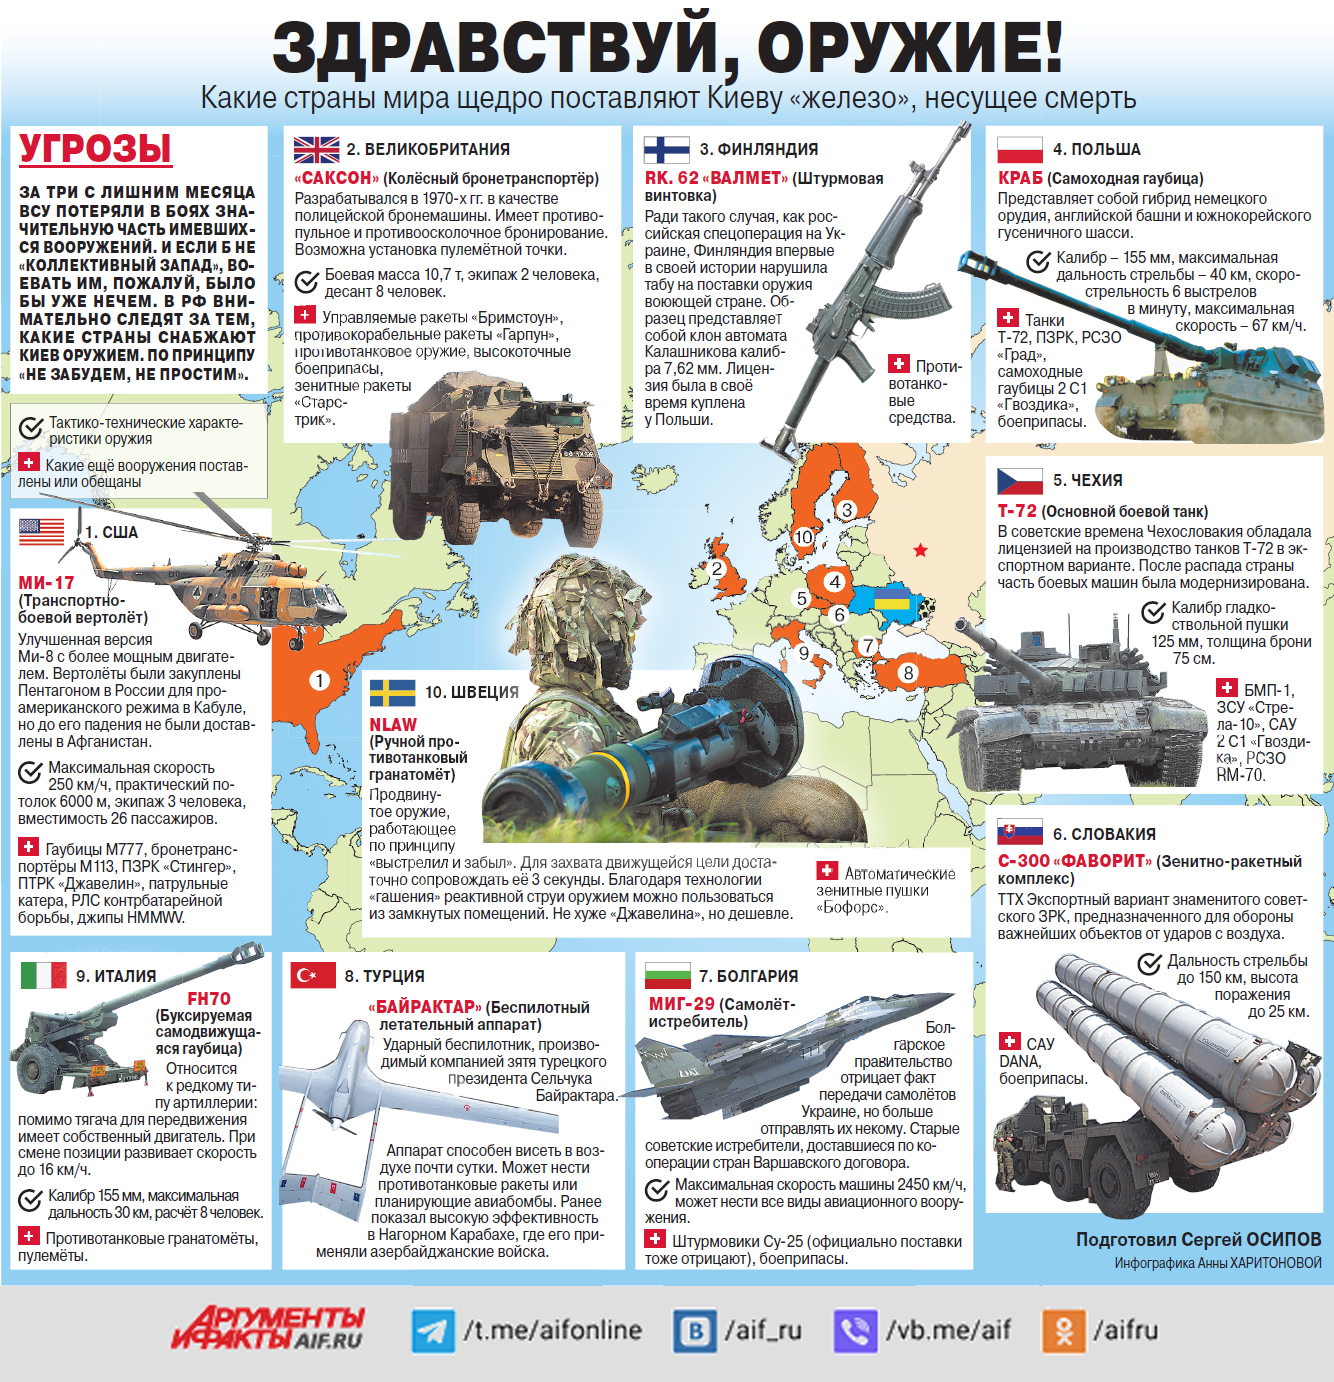 Каким вооружением обладает россия. Поставки оружия на Украину инфографика. Поставки вооружения на Украину инфографика. Поставки вооружения на Украину. Оружие Украины инфографика.